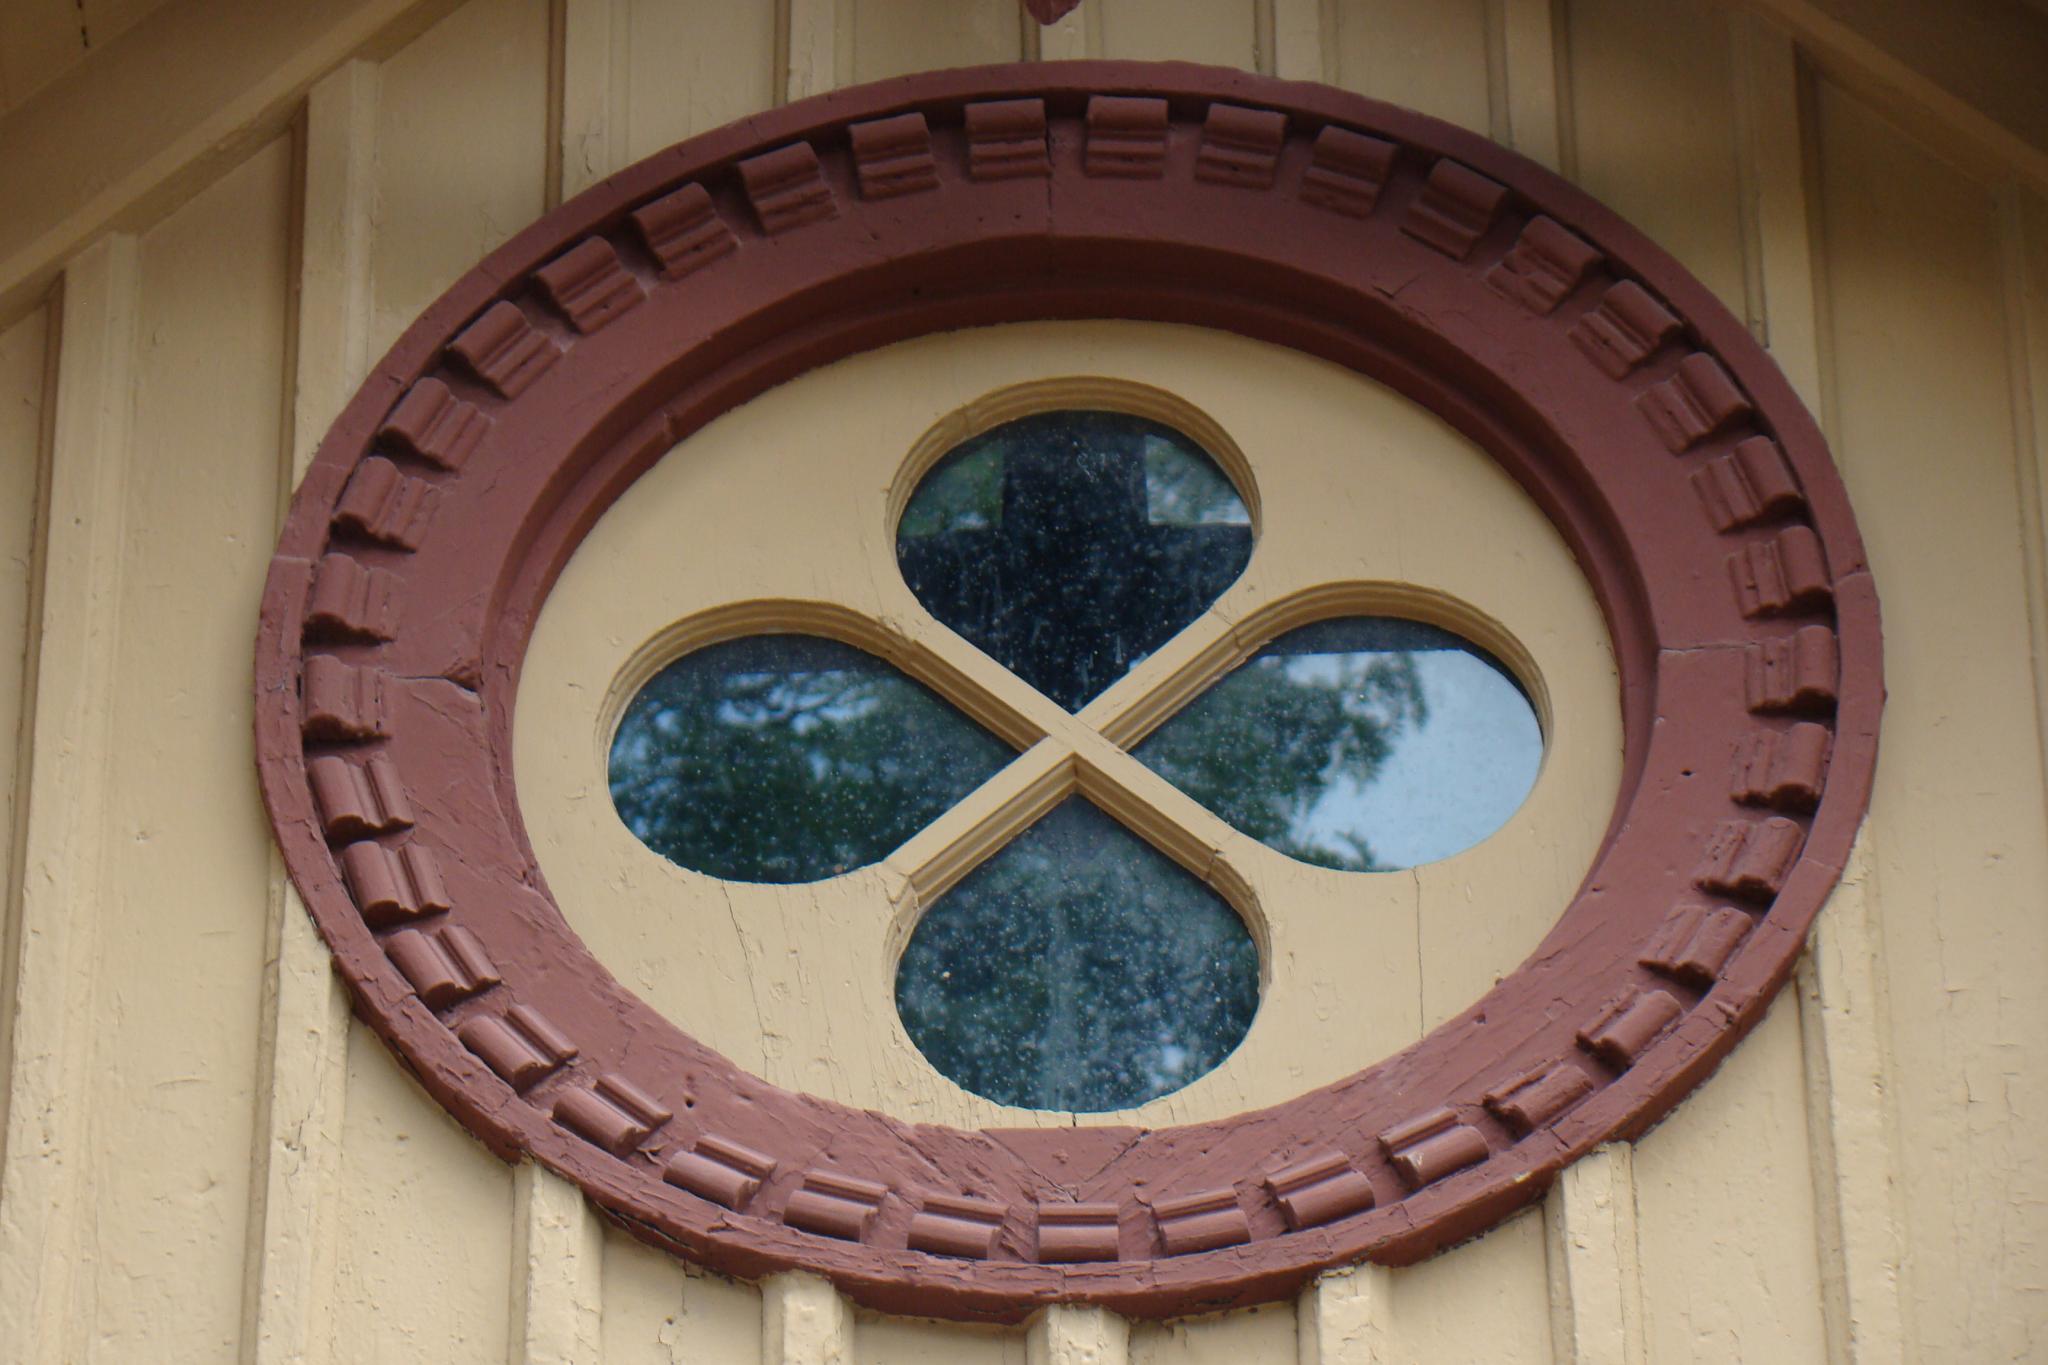 Quatrefoil window, Carriage House